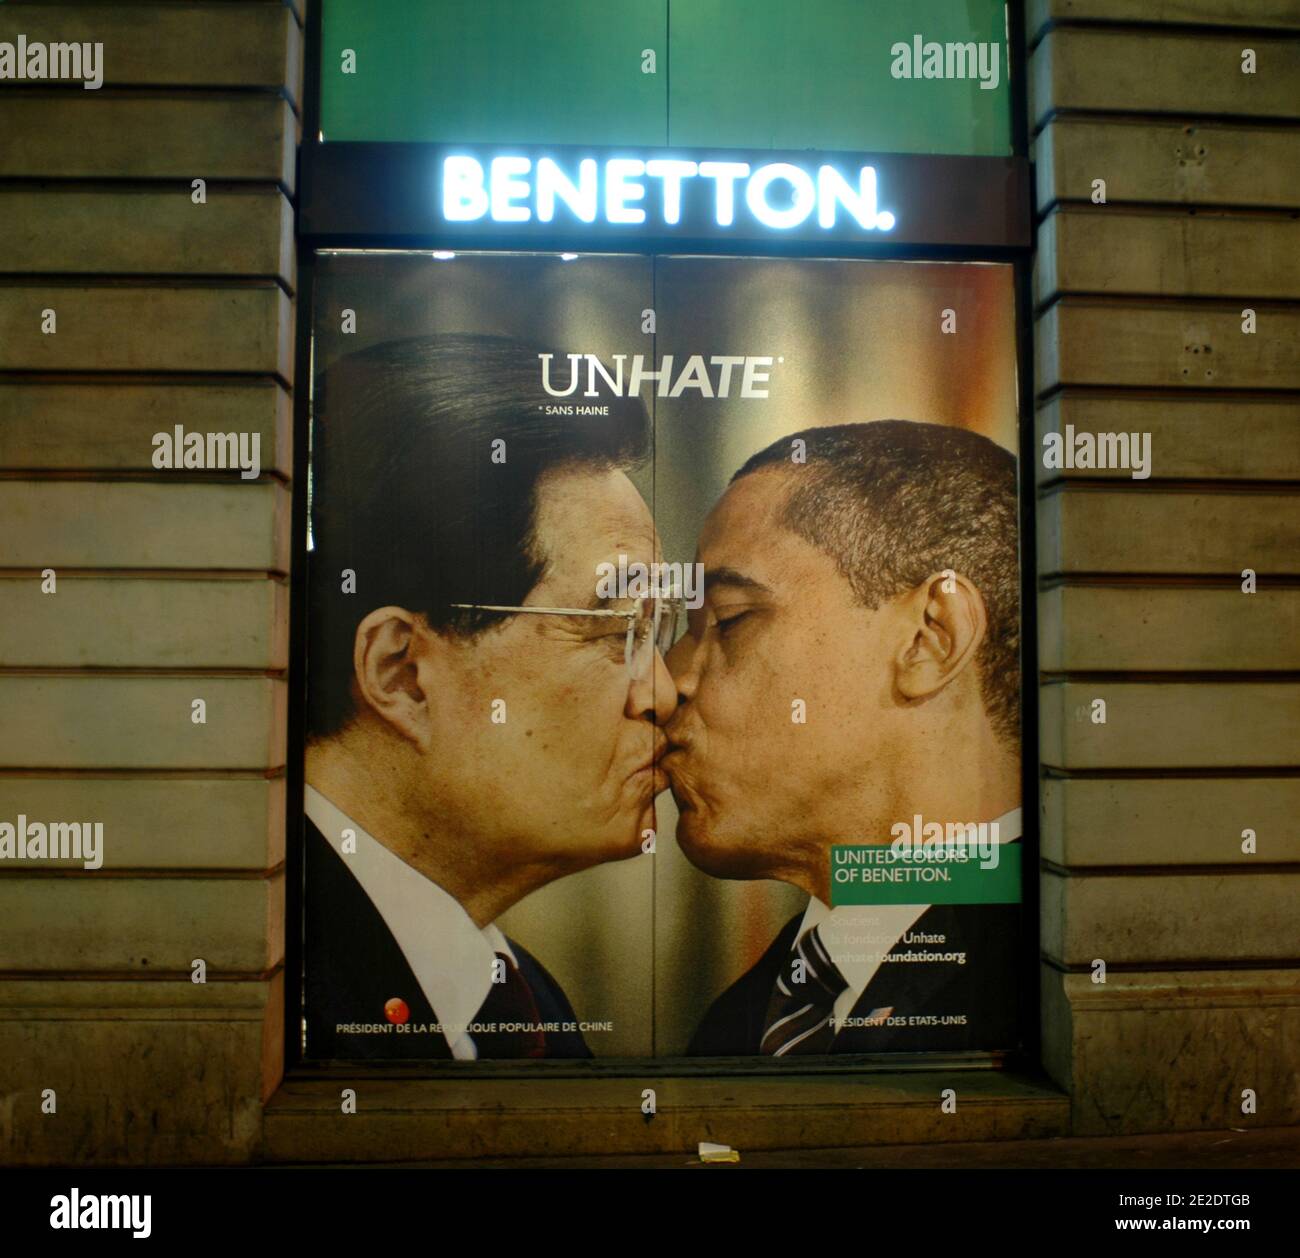 Des affiches de la campagne publicitaire « Unhate » de Benetton sont  exposées sur ses vitrines phares, place de l'Opéra à Paris, France, le 16  novembre 2011. Ils montrent différentes images d'opposants